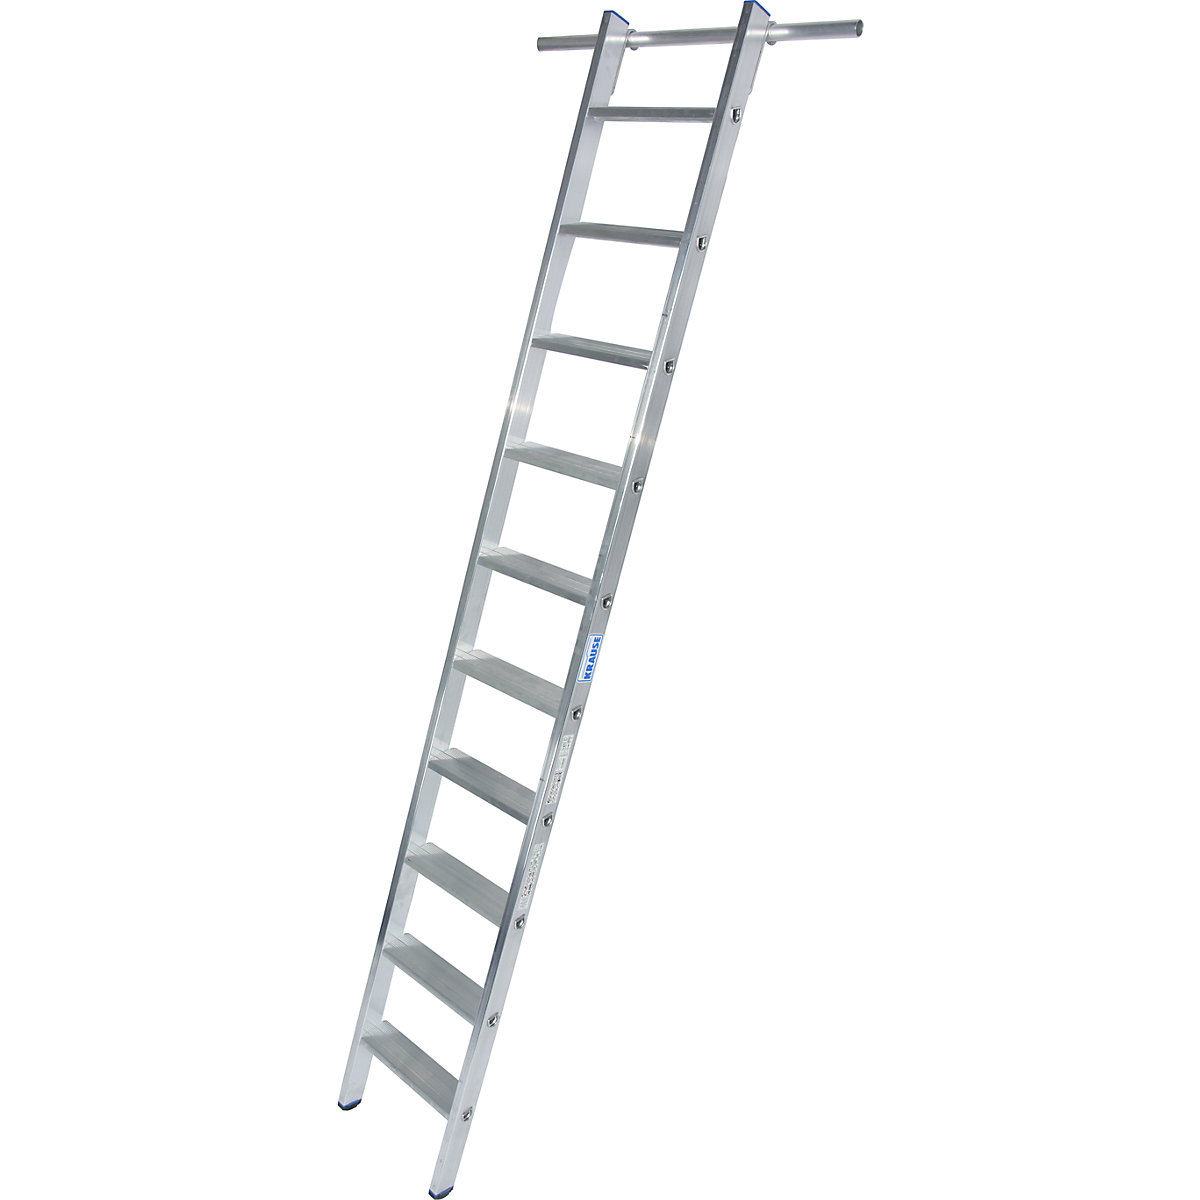 KRAUSE Stufen-Regalleiter, einhängbar, 1 Paar Einhängehaken, 10 Stufen